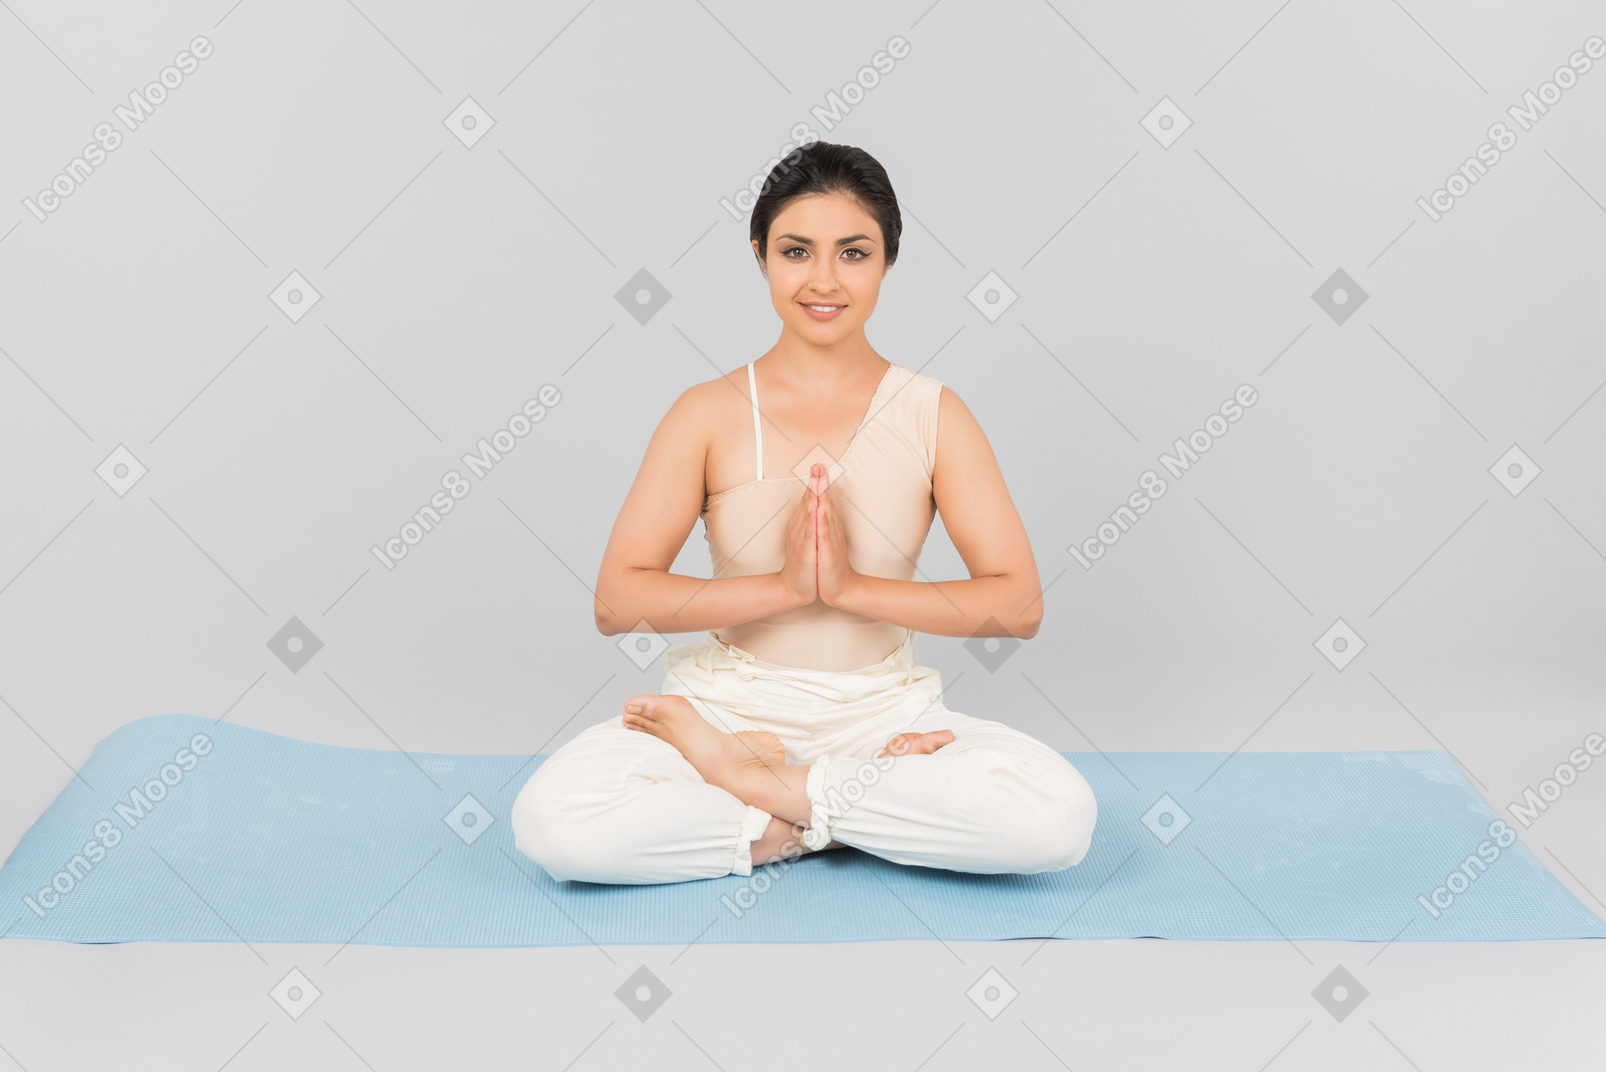 Jeune femme indienne avec les jambes croisées et les mains jointes assis sur un tapis de yoga